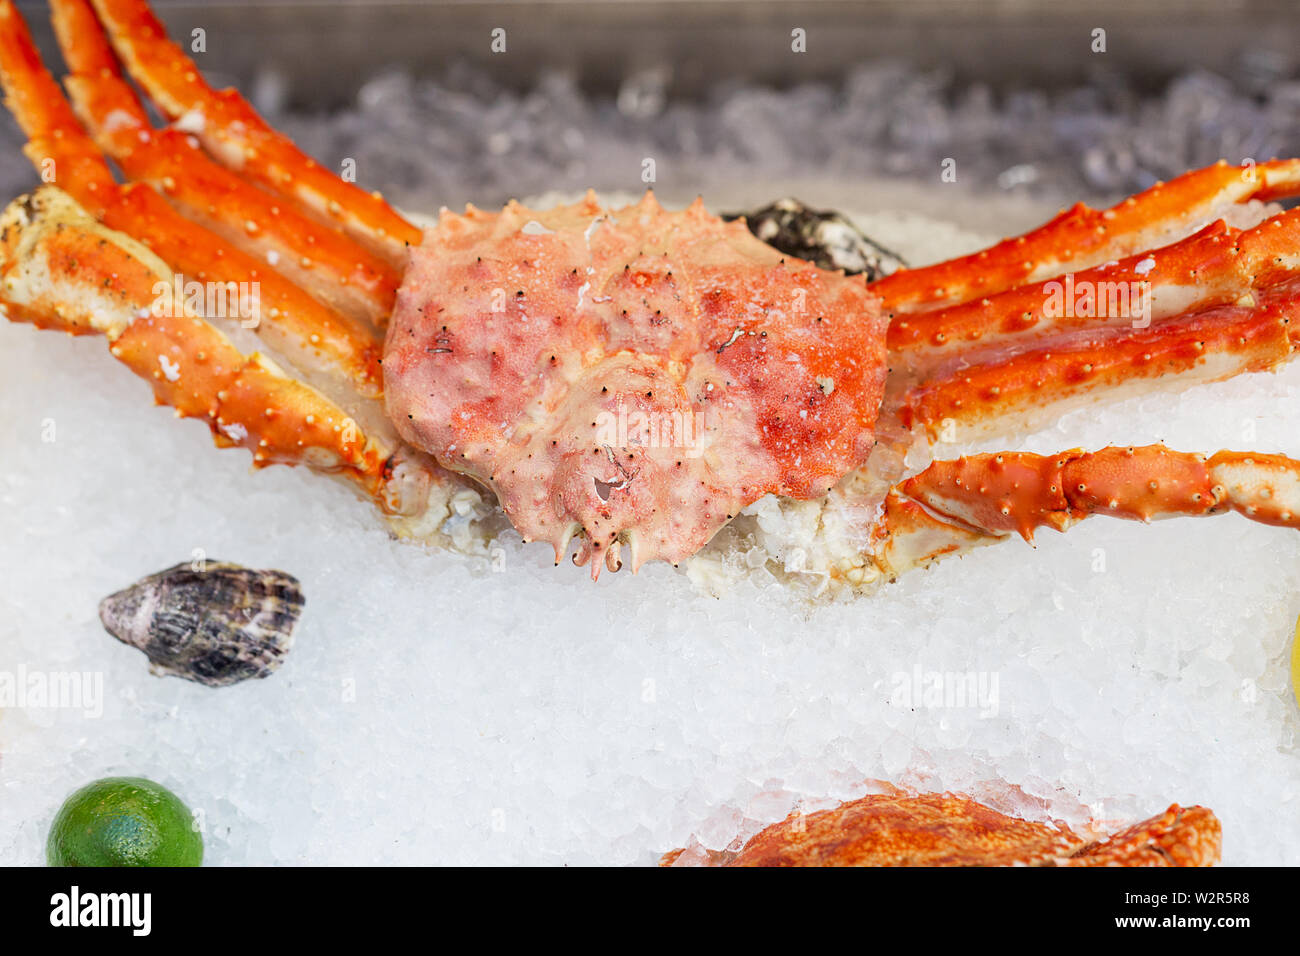 King crab on ice au Street Food Festival. Concept de fruits de mer dans la restauration rapide. Banque D'Images